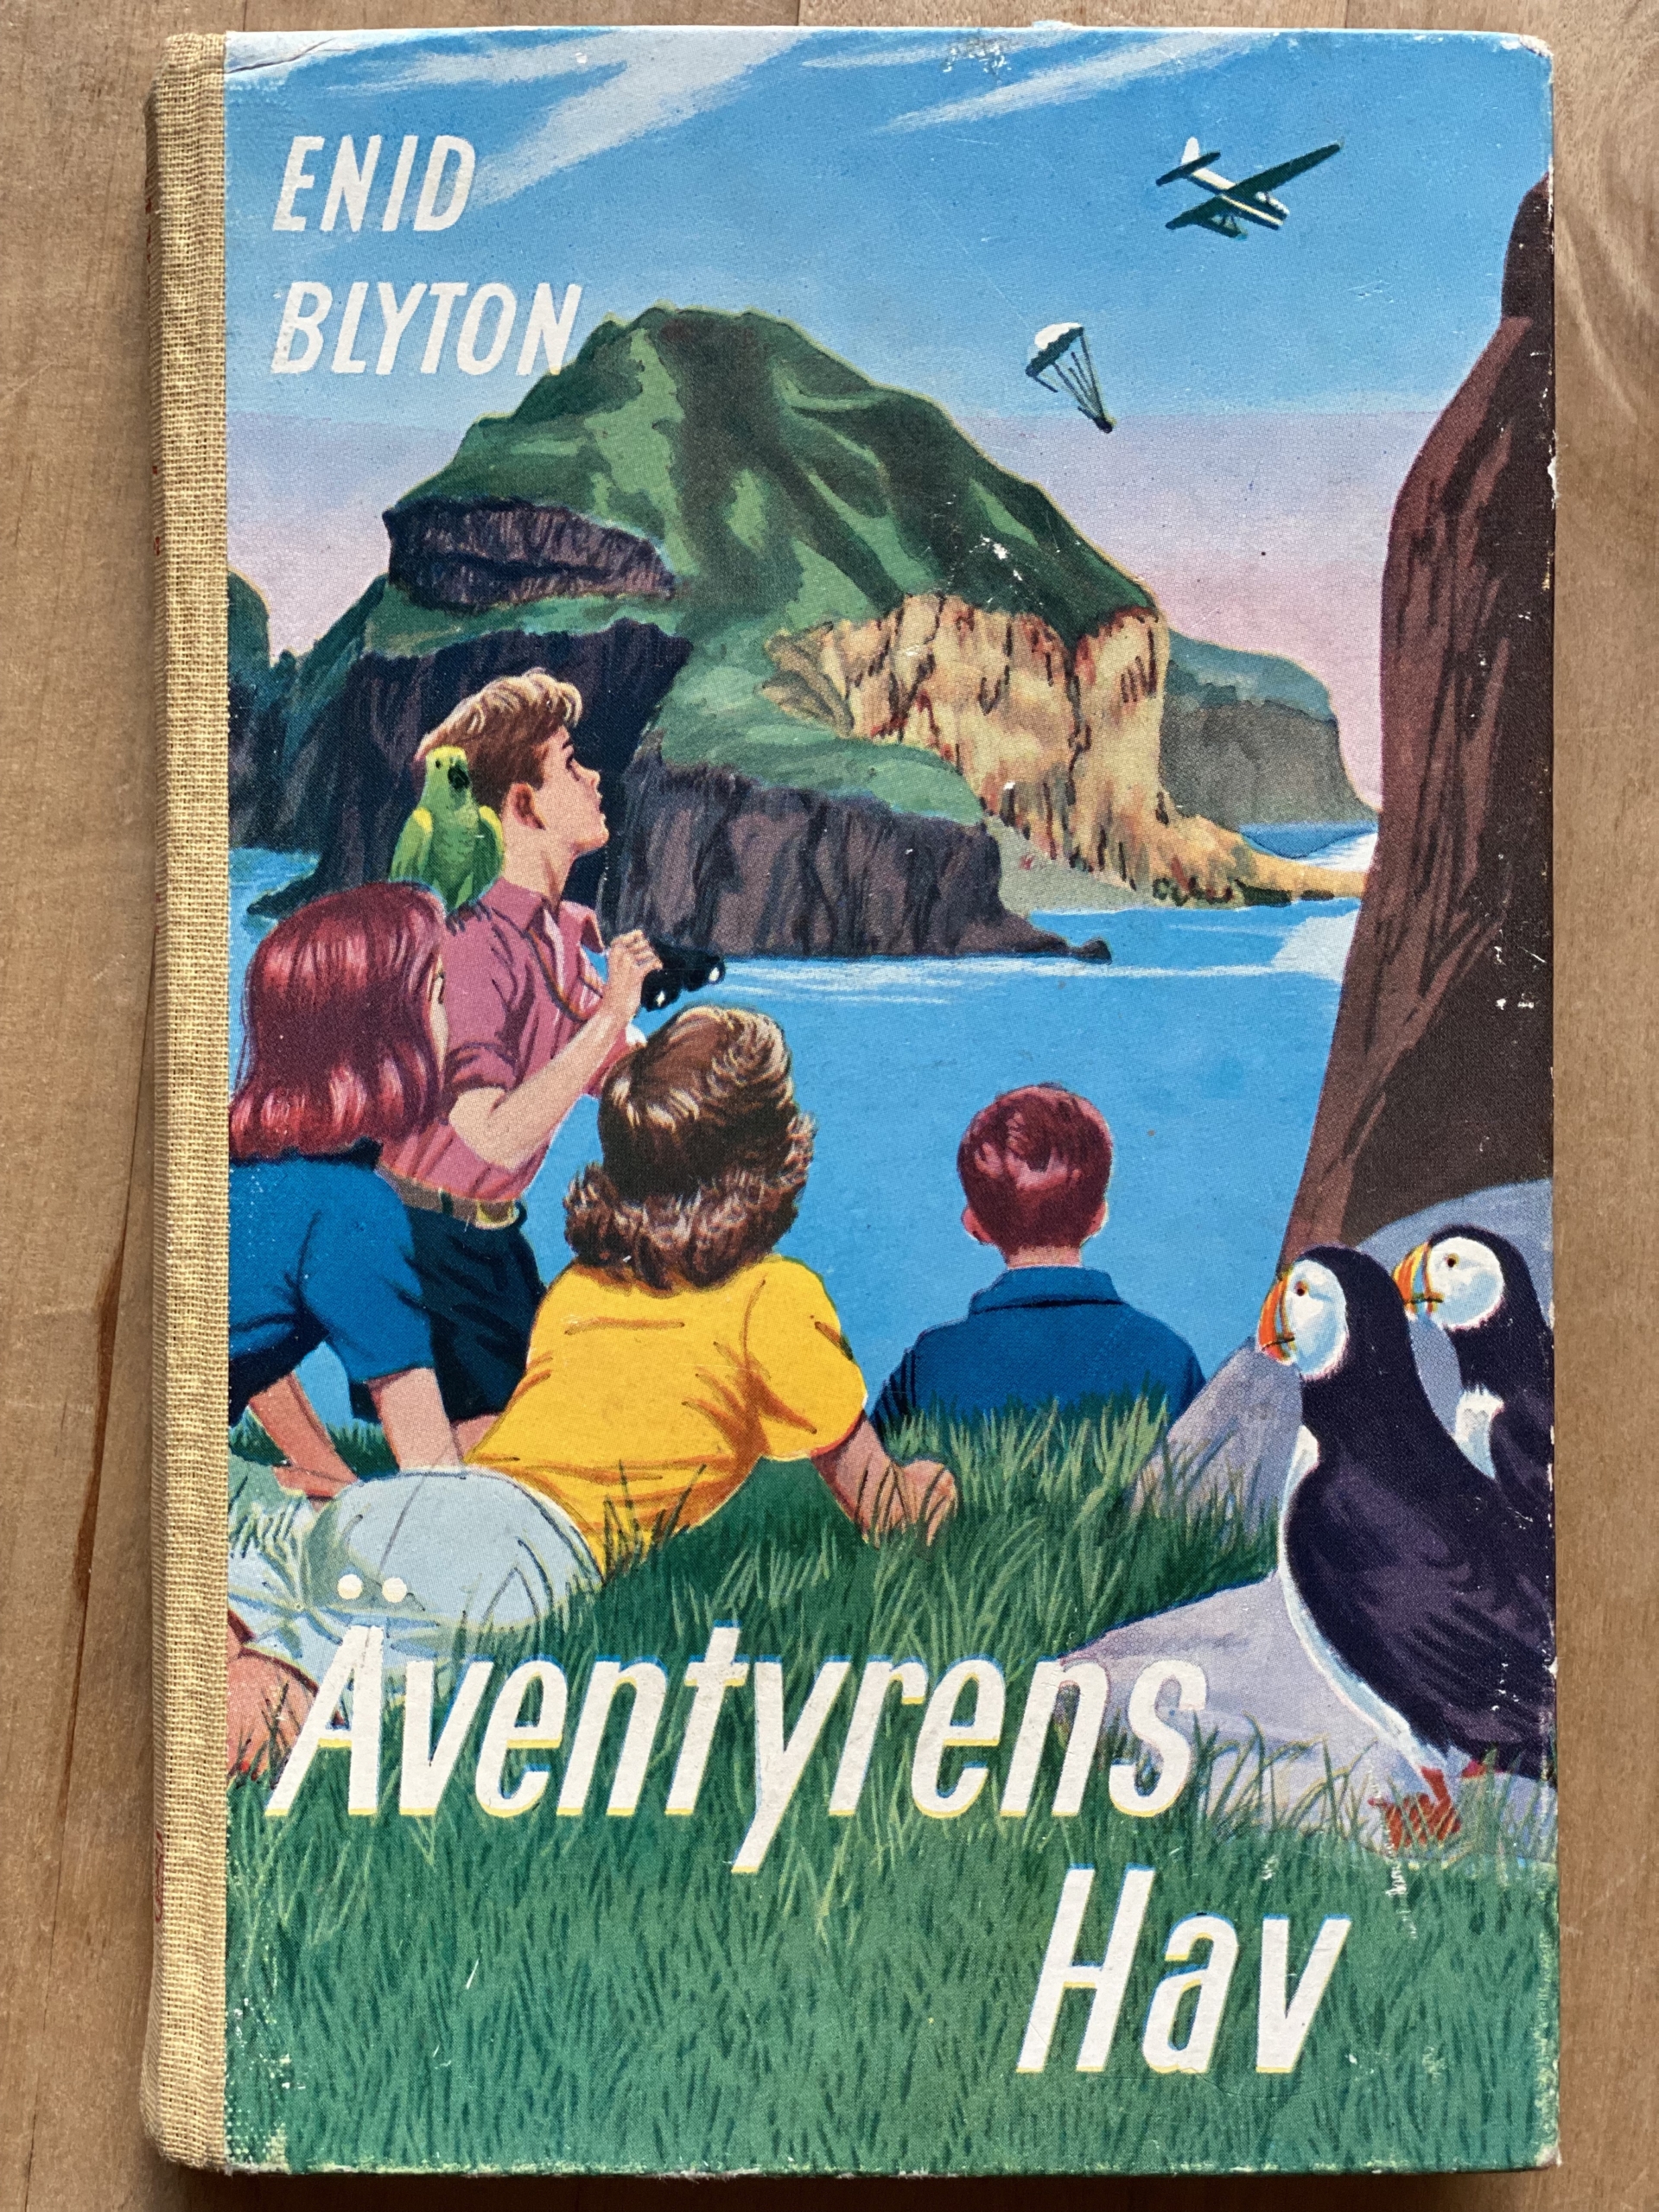 Bokomslag Äventyrens hav. Fyra barn sitter vid grässlänt och tittar ut över dramatisk skotskt hav med klippö mitt i havet och ett flygplan som släppt en fallskärm på himlen. Två färggranna lunnefåglar i ena kanten på omslaget.